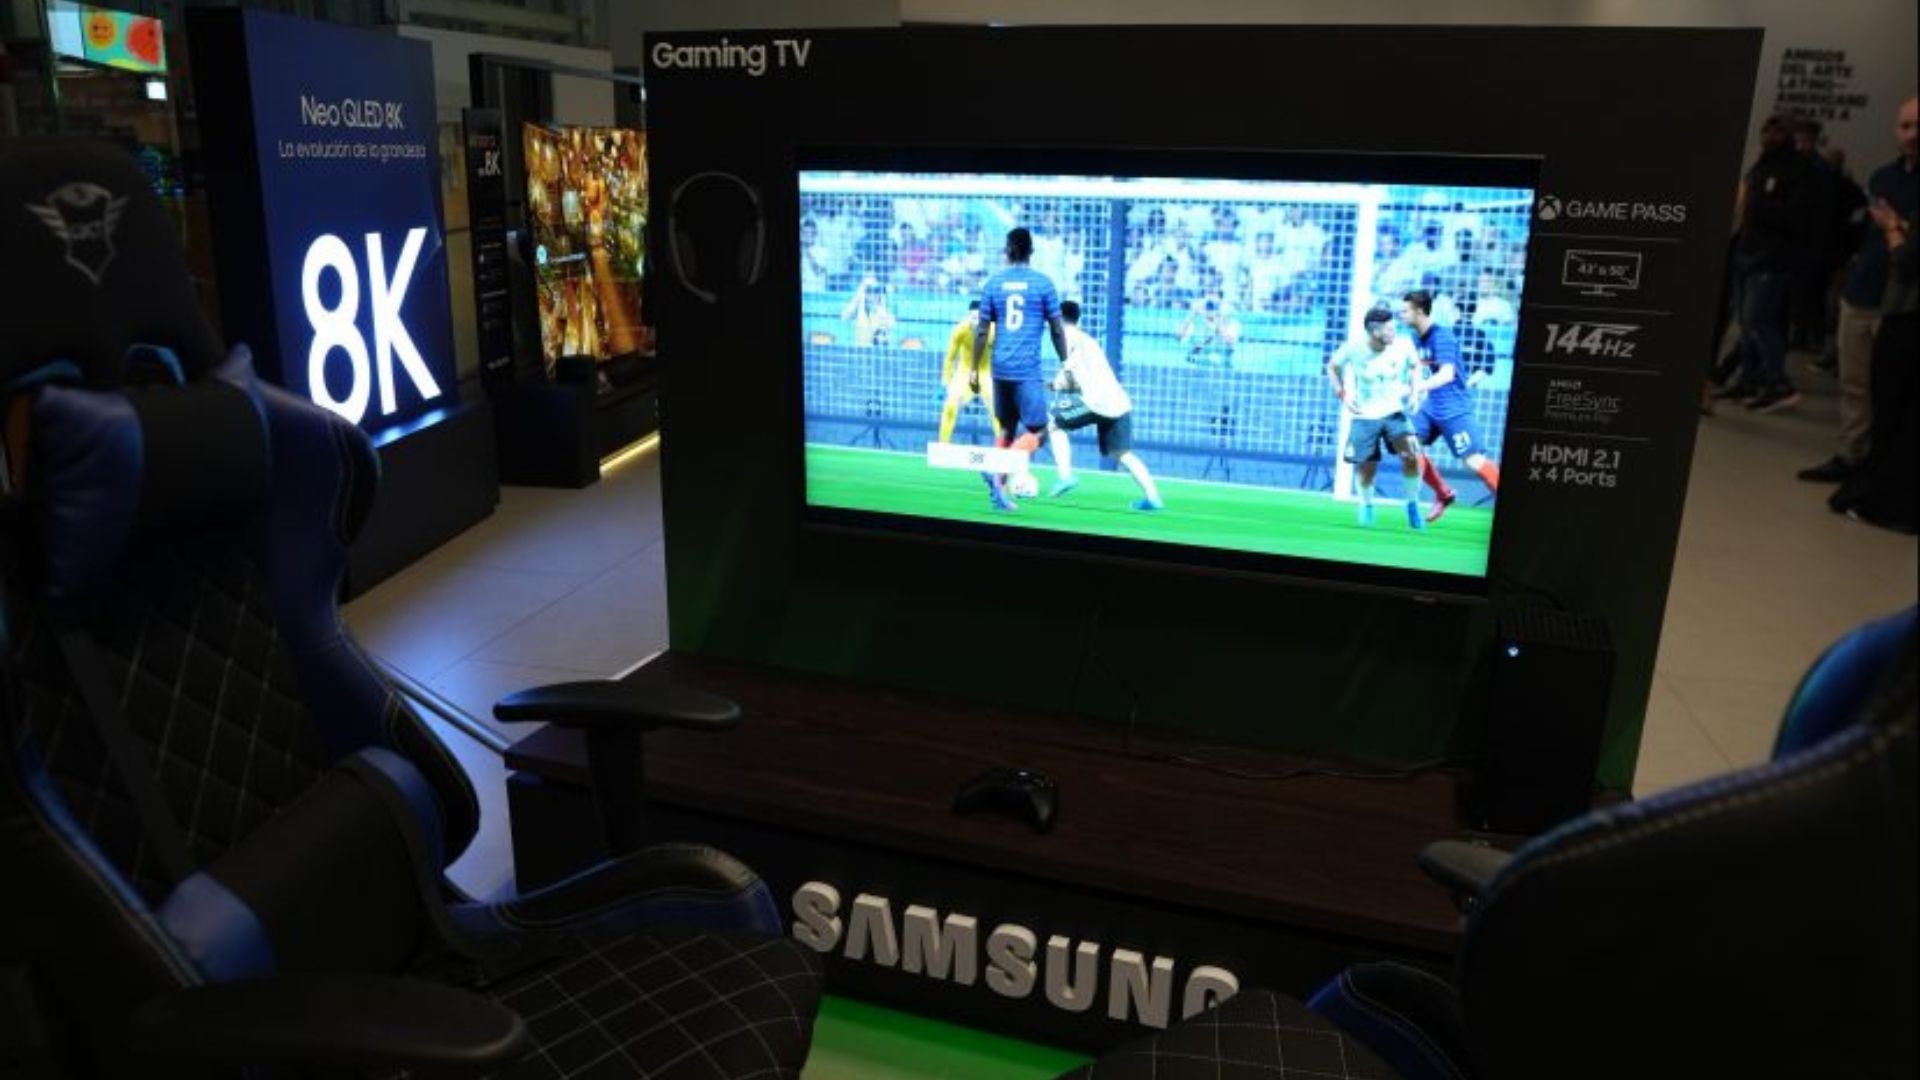 Samsung Gaming TV Serie C, la tercera generación del televisor que permite jugar videojuegos sin necesidad de tener una videoconsola